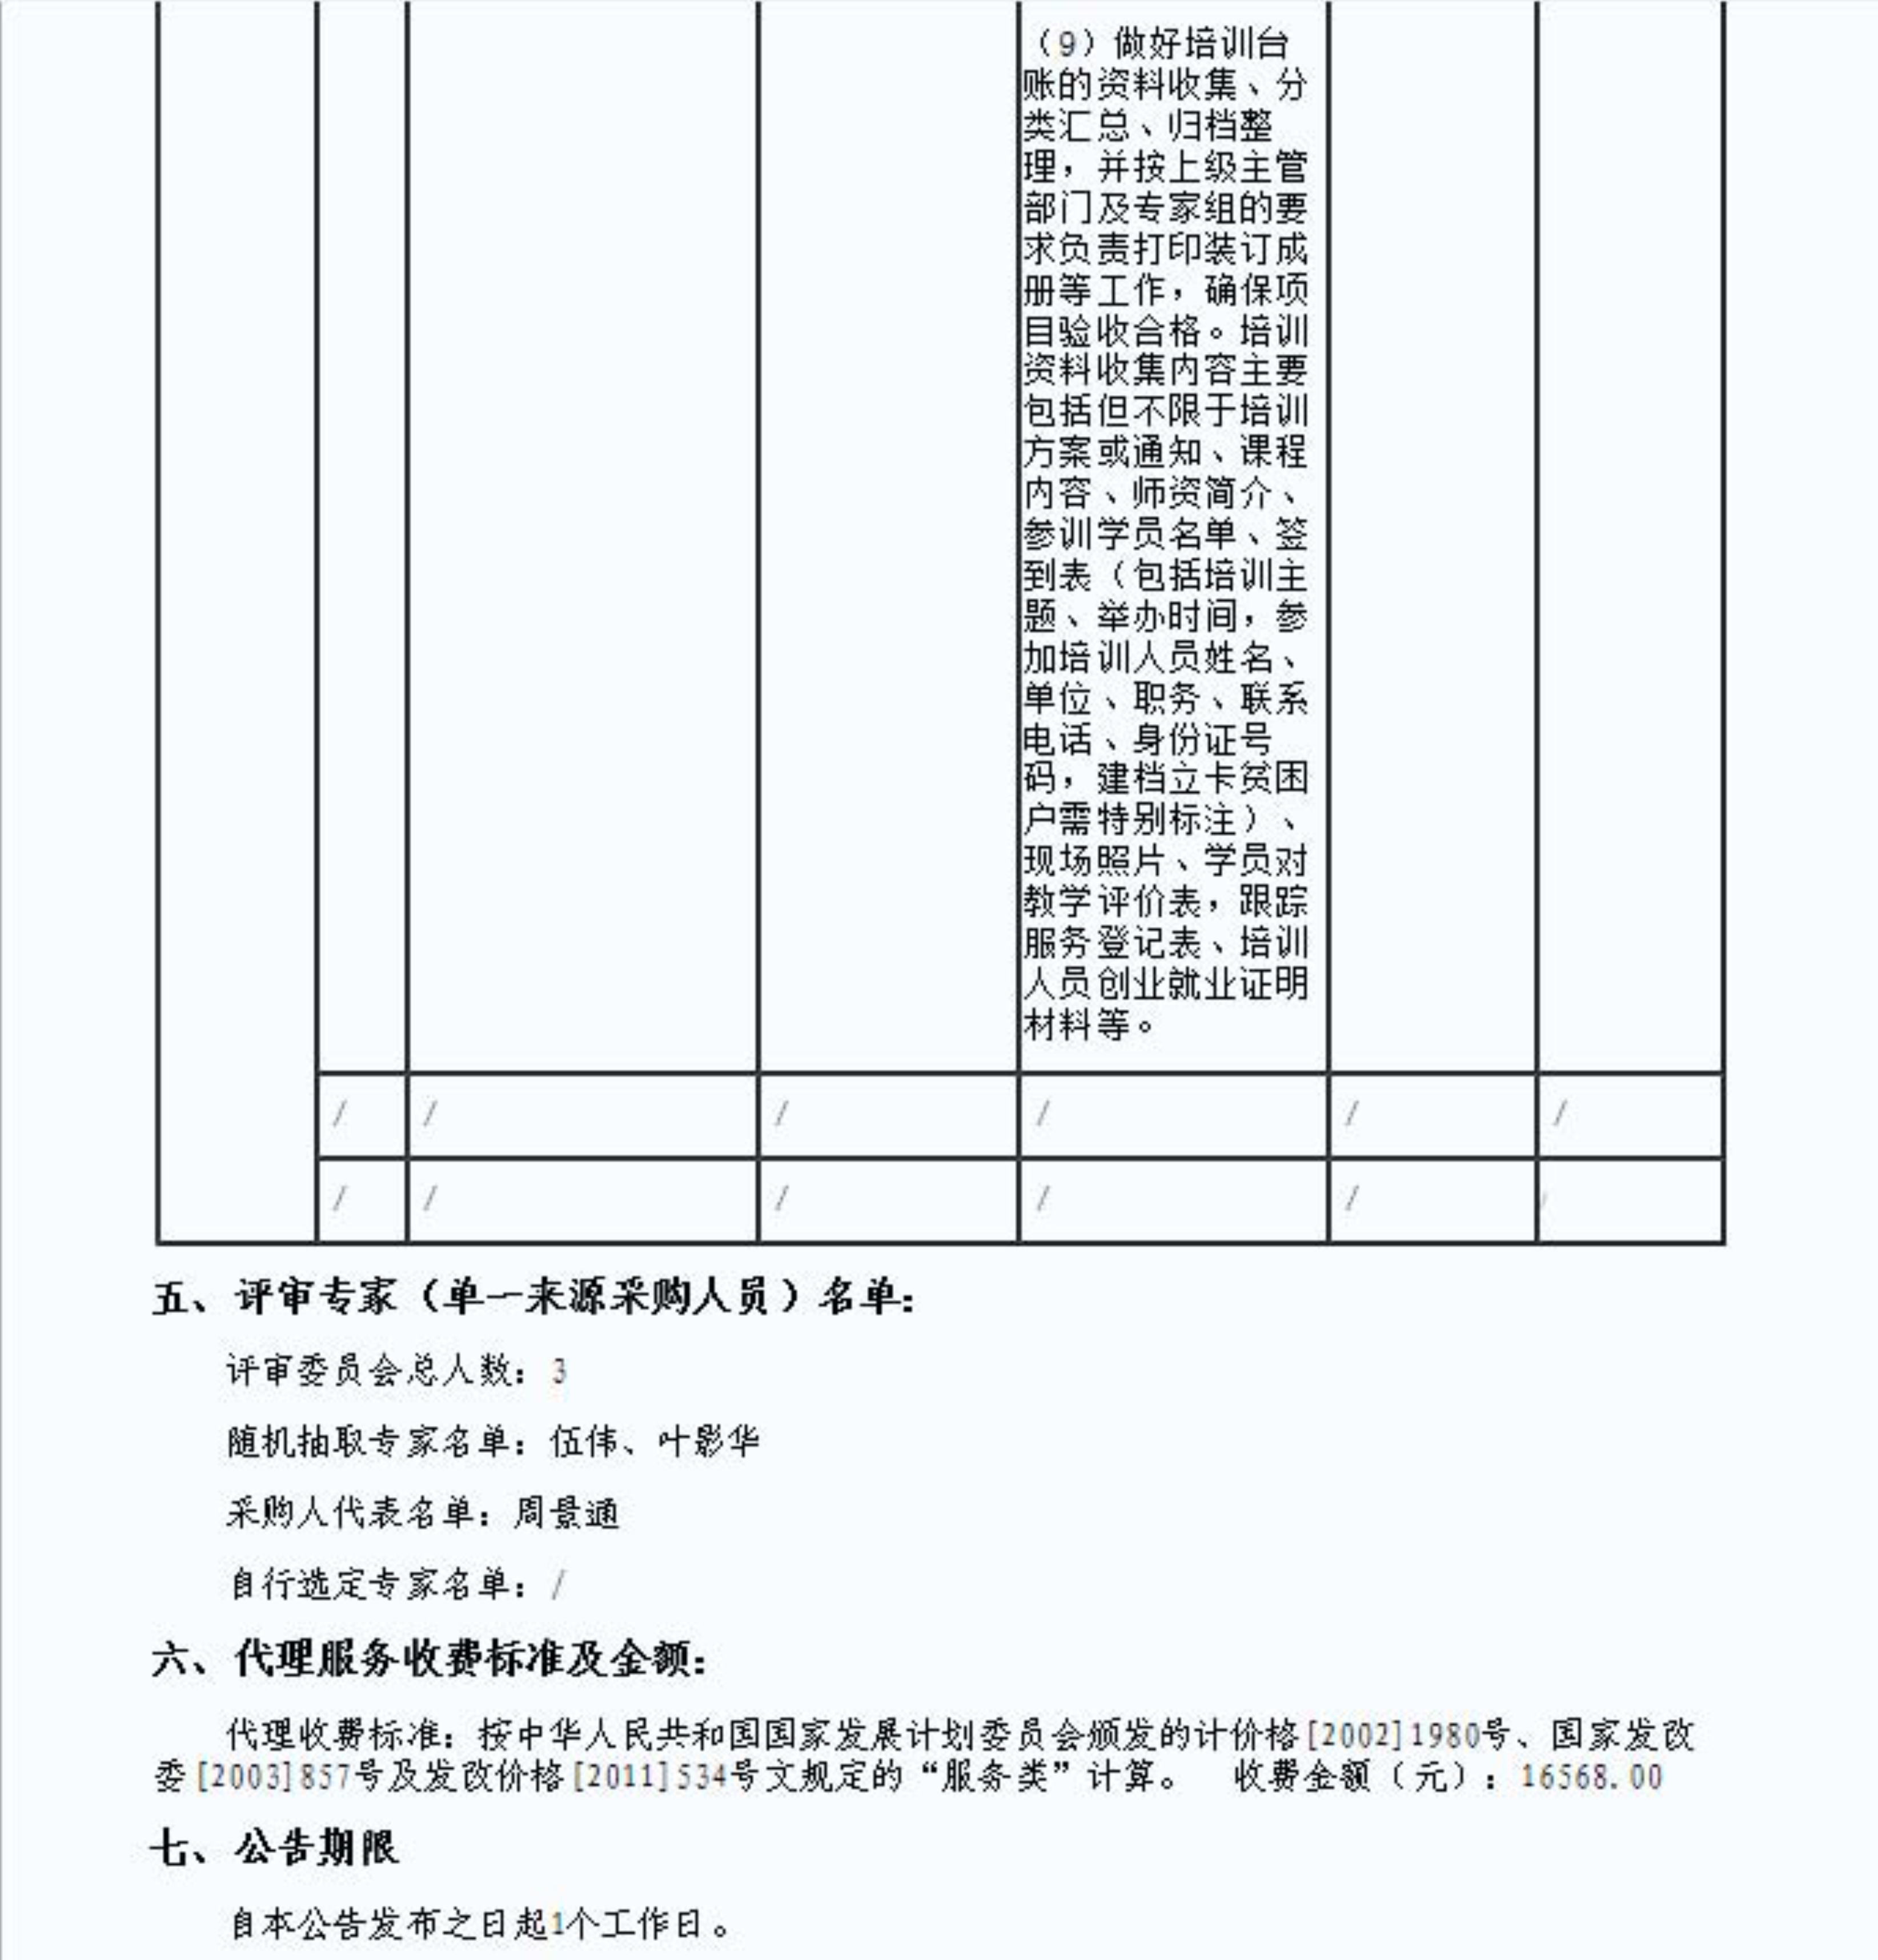 2.连平县电子商务进农村培训体系建设项目的成交结果公告_3.jpg